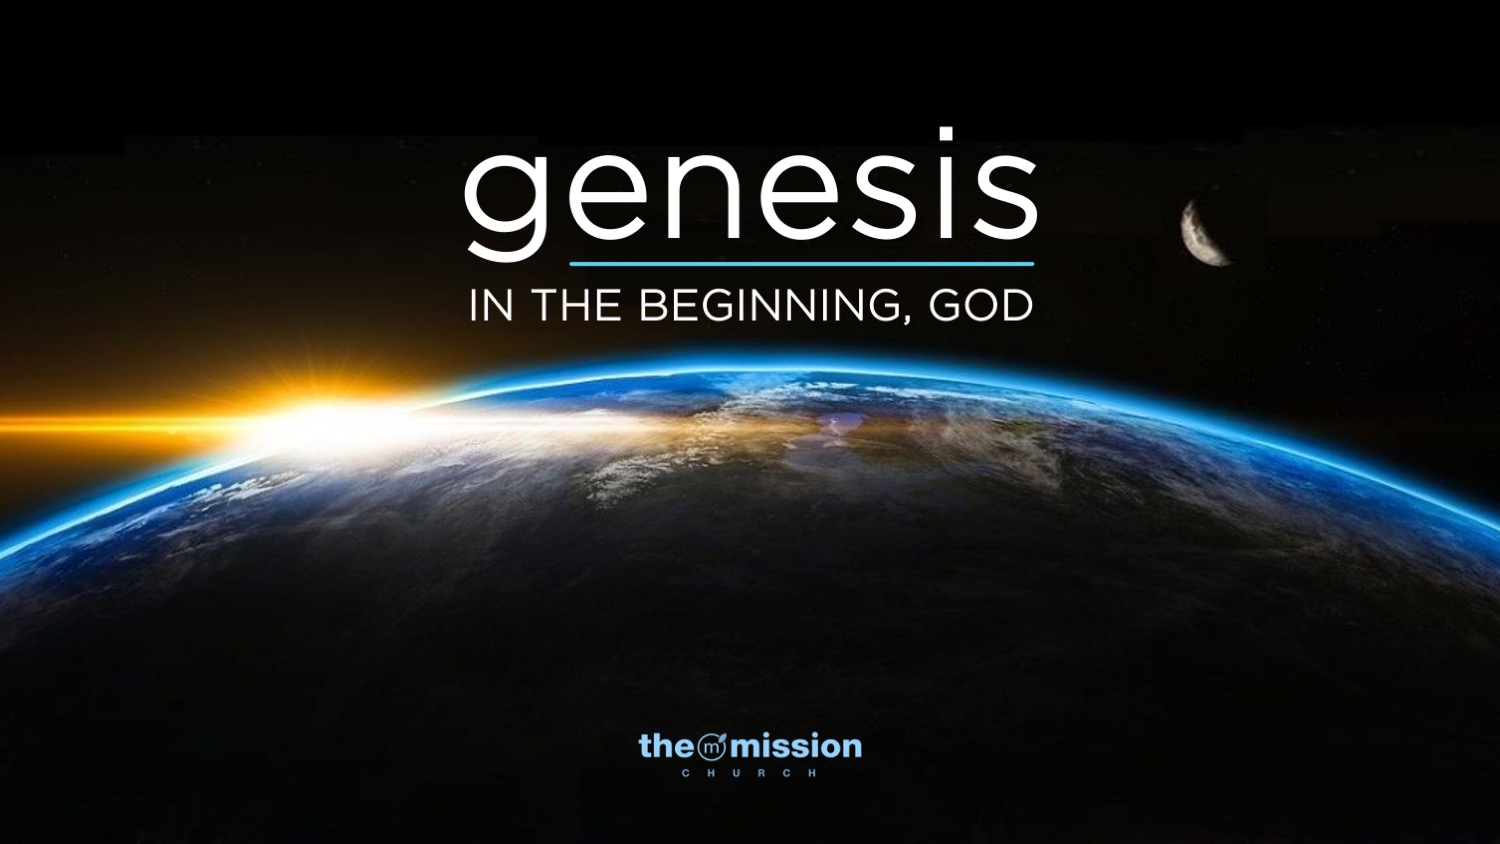 Genesis Bible Study, God, Creation, Evolution, Evolve, Big-Bang Theory